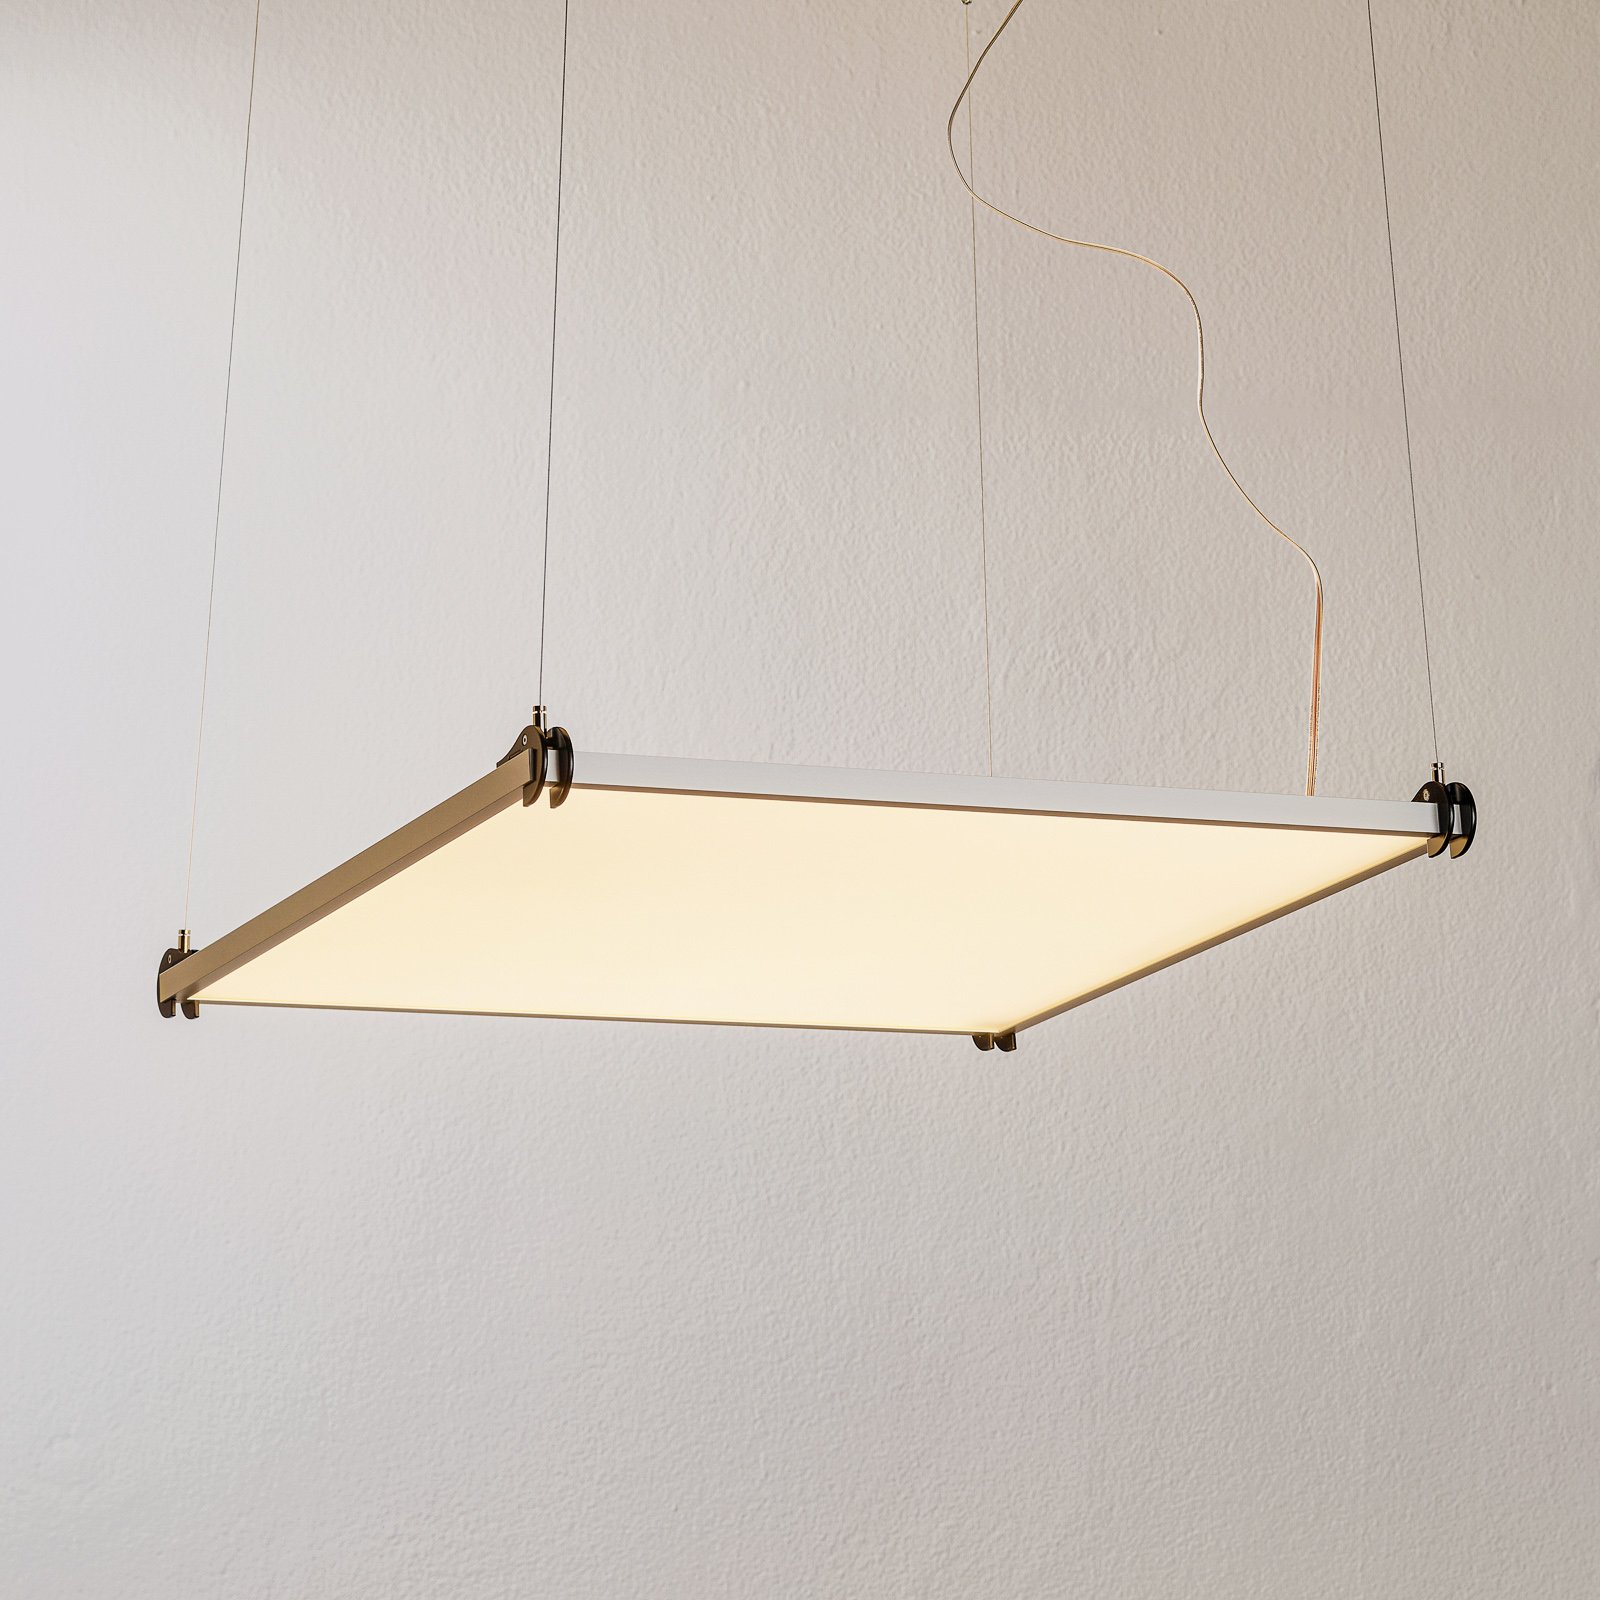 Suspension LED de designer Grafa